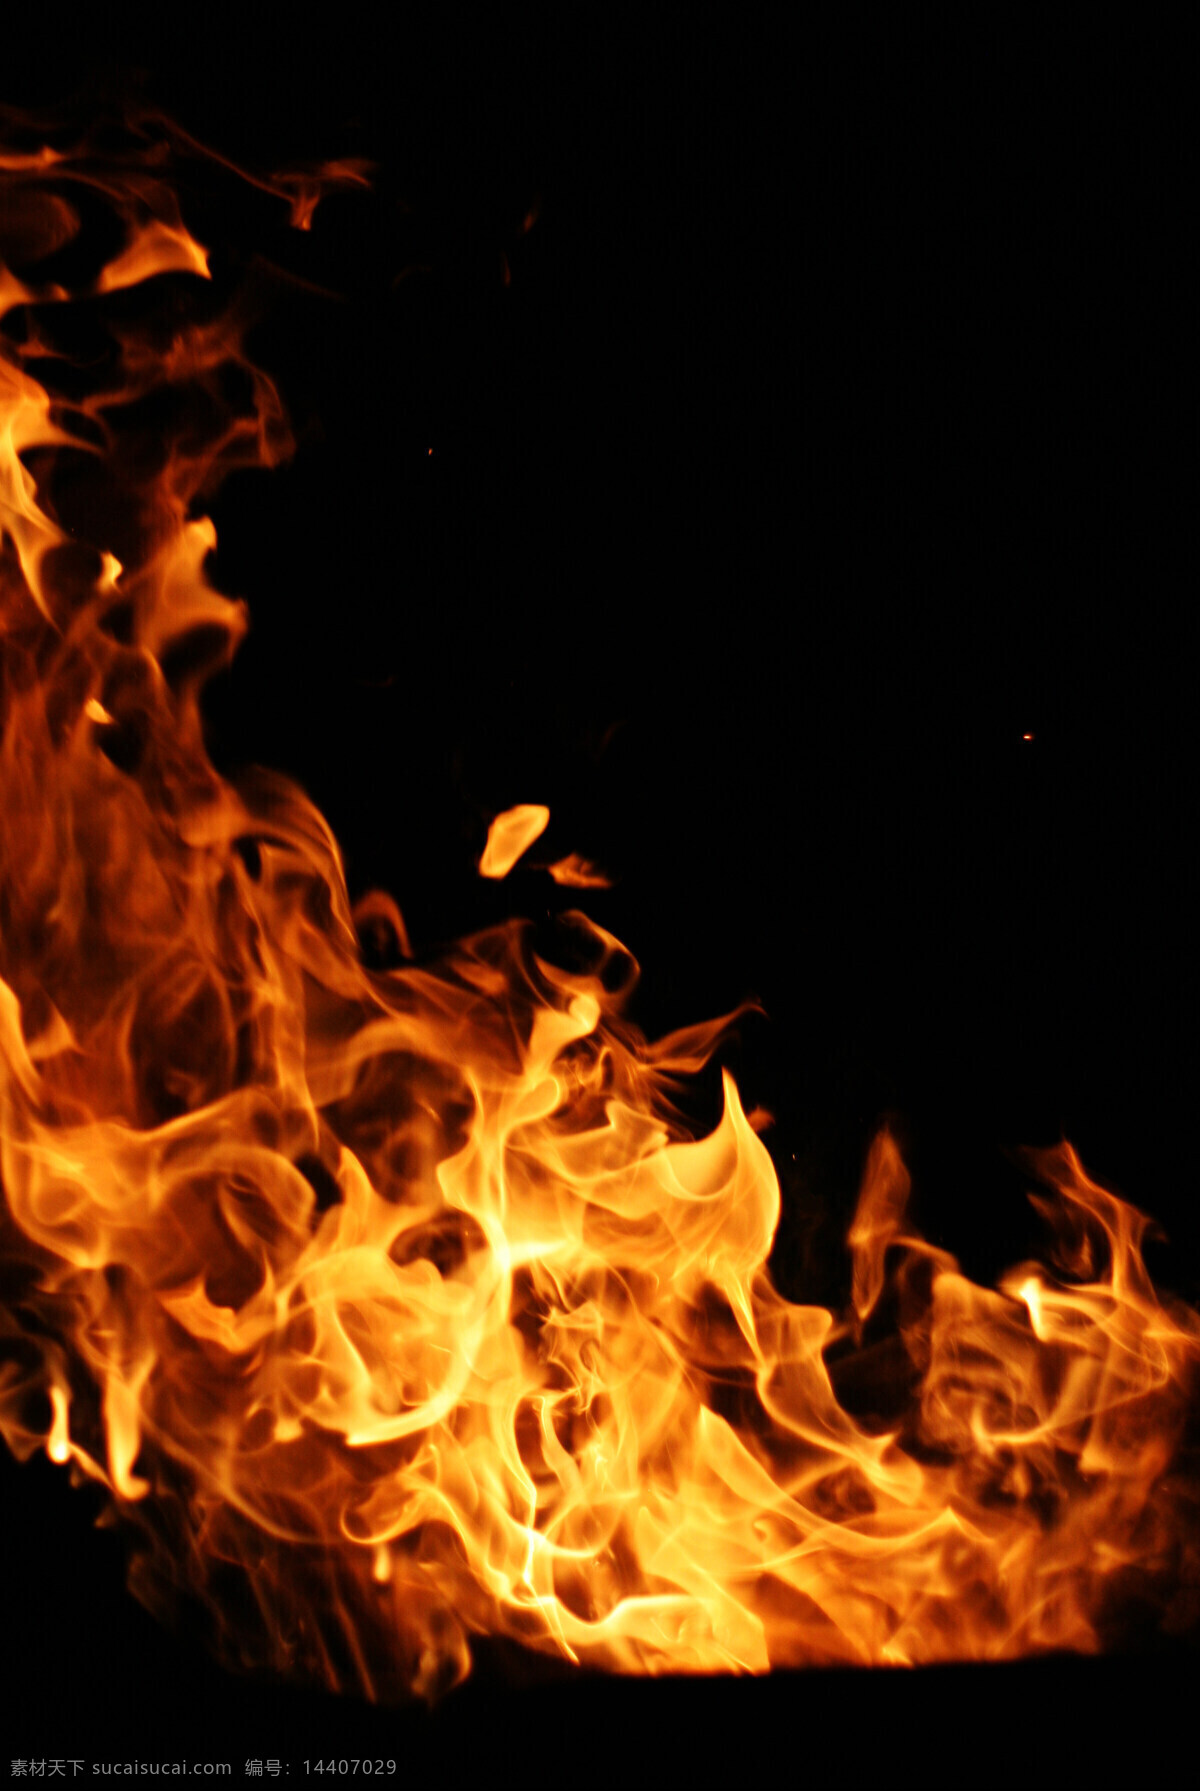 火焰背景 火山 爆炸 火焰 背景 烟雾 黑色 晚上 大伙 柴火 燃烧 炭火 烤火 火焰素材 火素材 自然景观 自然风光